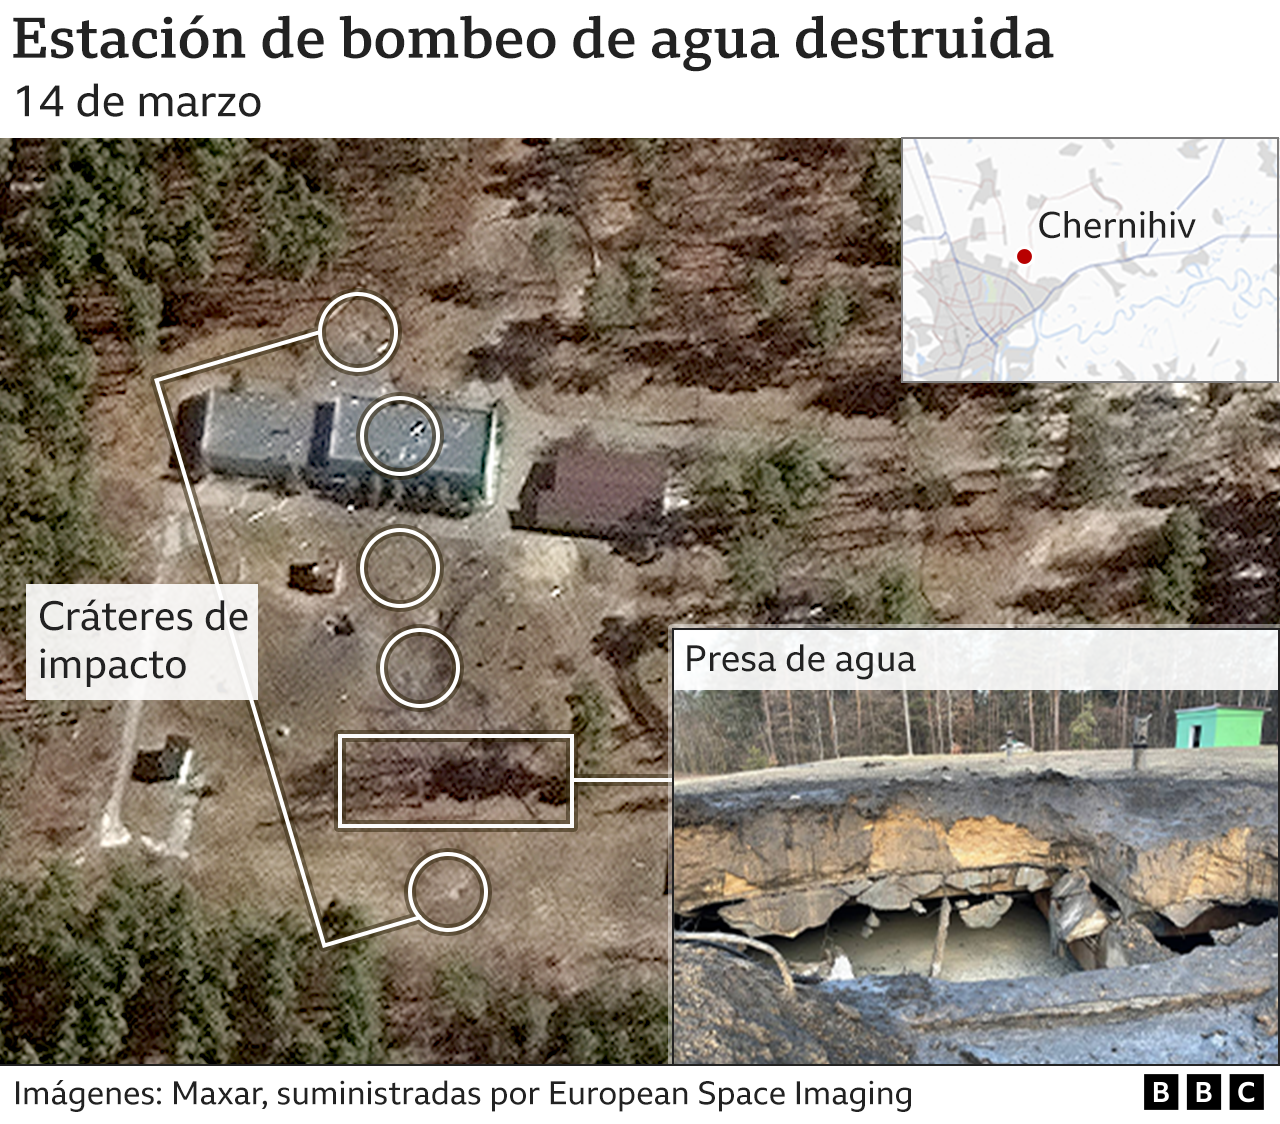 Imagen satelital muestra destrucción de estación de bombeo de agua